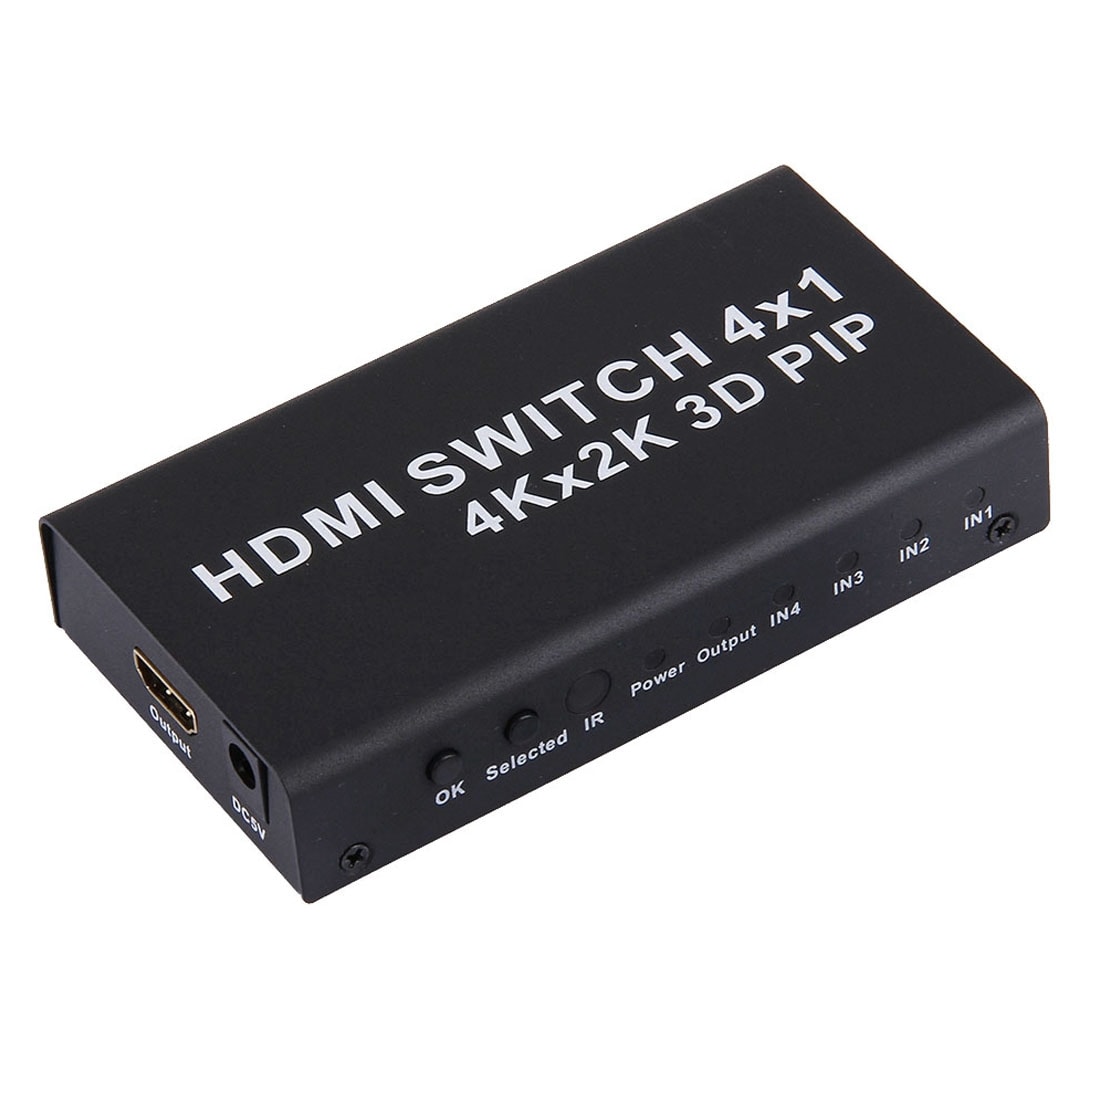 HDMI 4x1 Monitoiminen Switch 4K - Kaukosäädin mukana